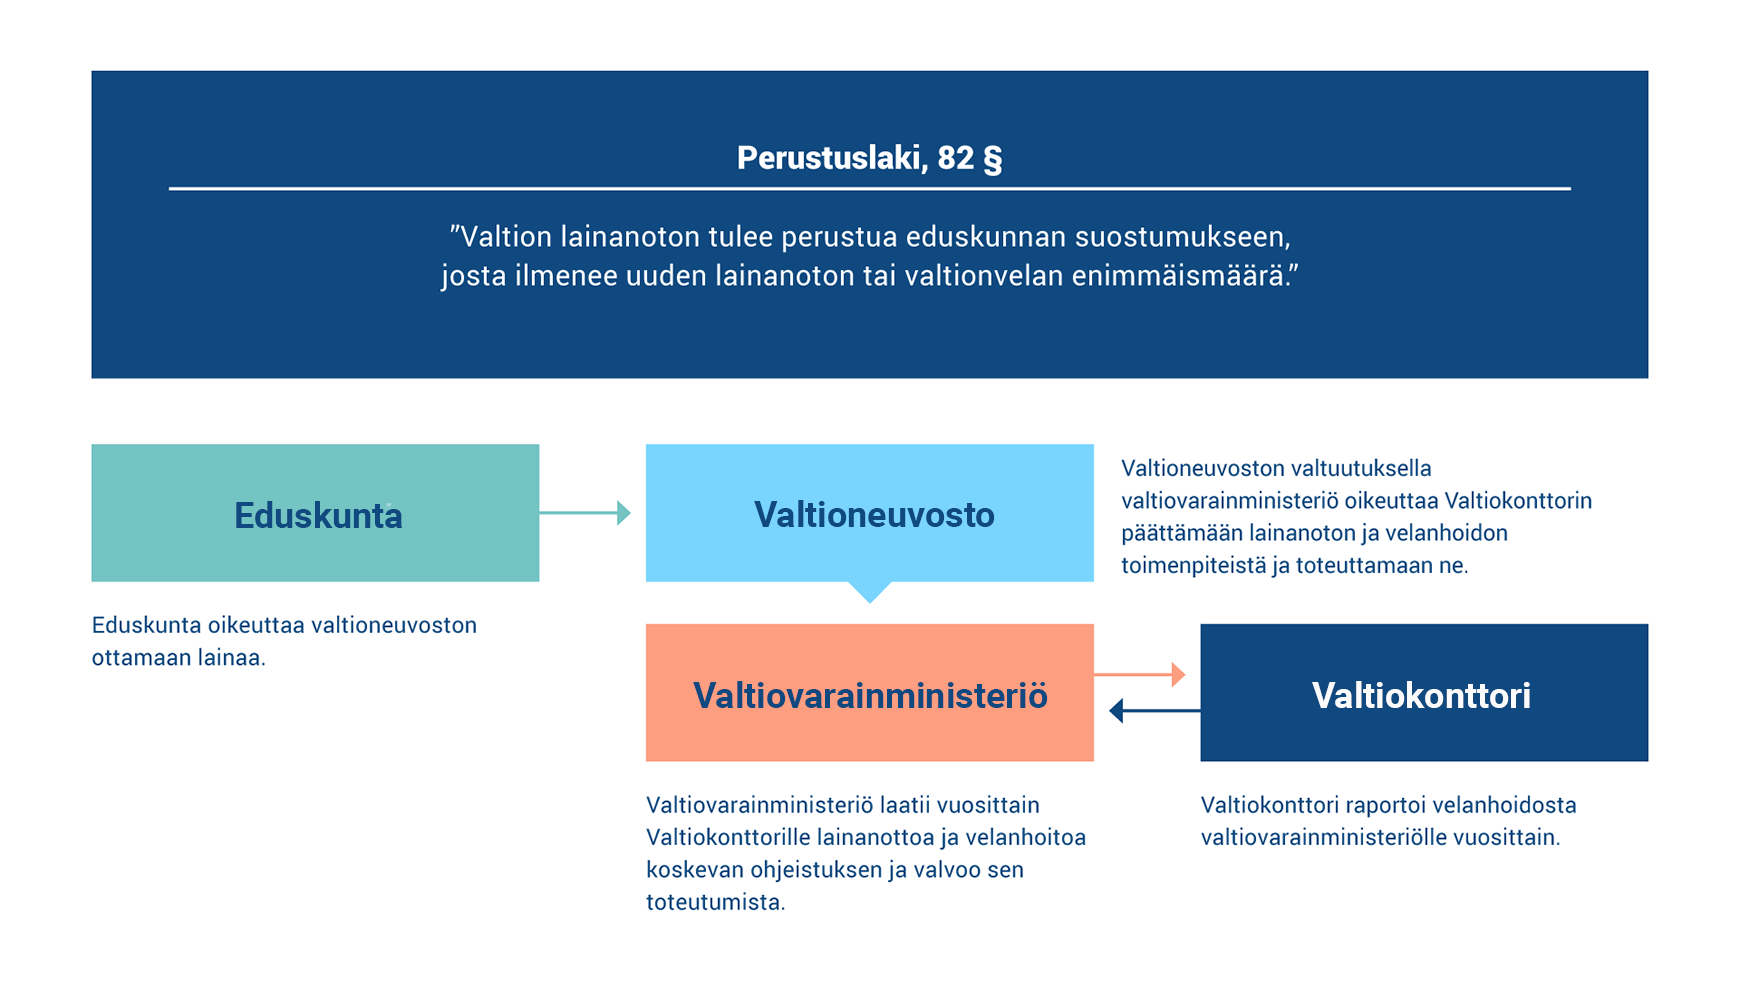 Kuvio esittää Suomen velanhallinnan viitekehyksen, eli toimivaltajaon eduskunnan, valtioneuvoston ja Valtiokonttorin välillä.